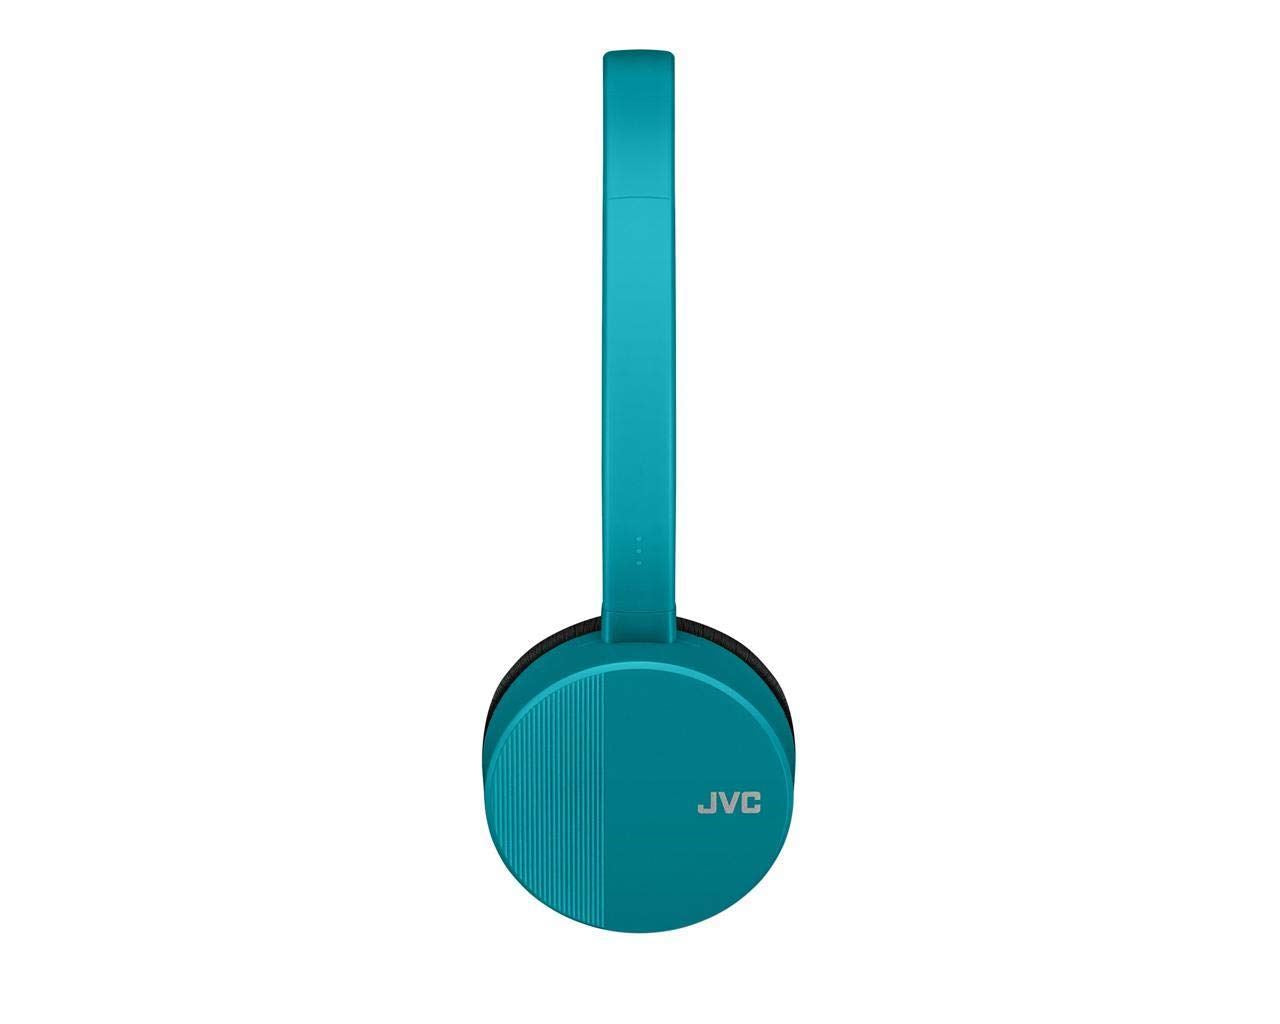 JVC Bluetooth On-Ear Turquoise Headphones